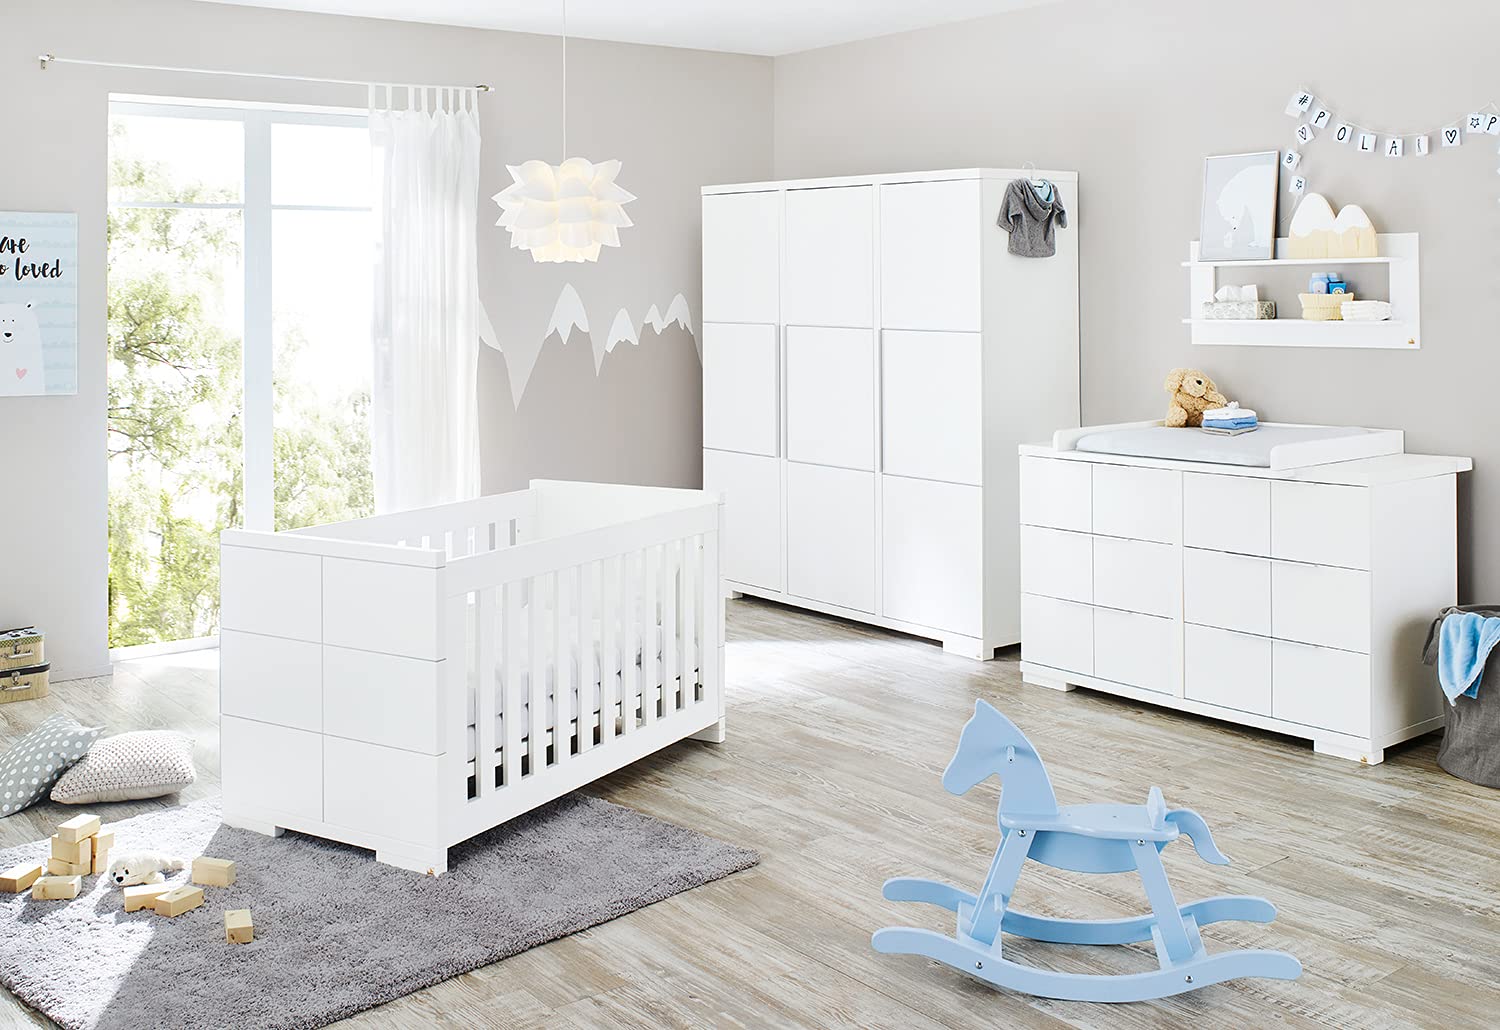 PINOLINO Babyzimmer Kinderzimmer komplett Set Polar extrabreit groß, Kinderbett, Schrank und Wickelkommode, weiß